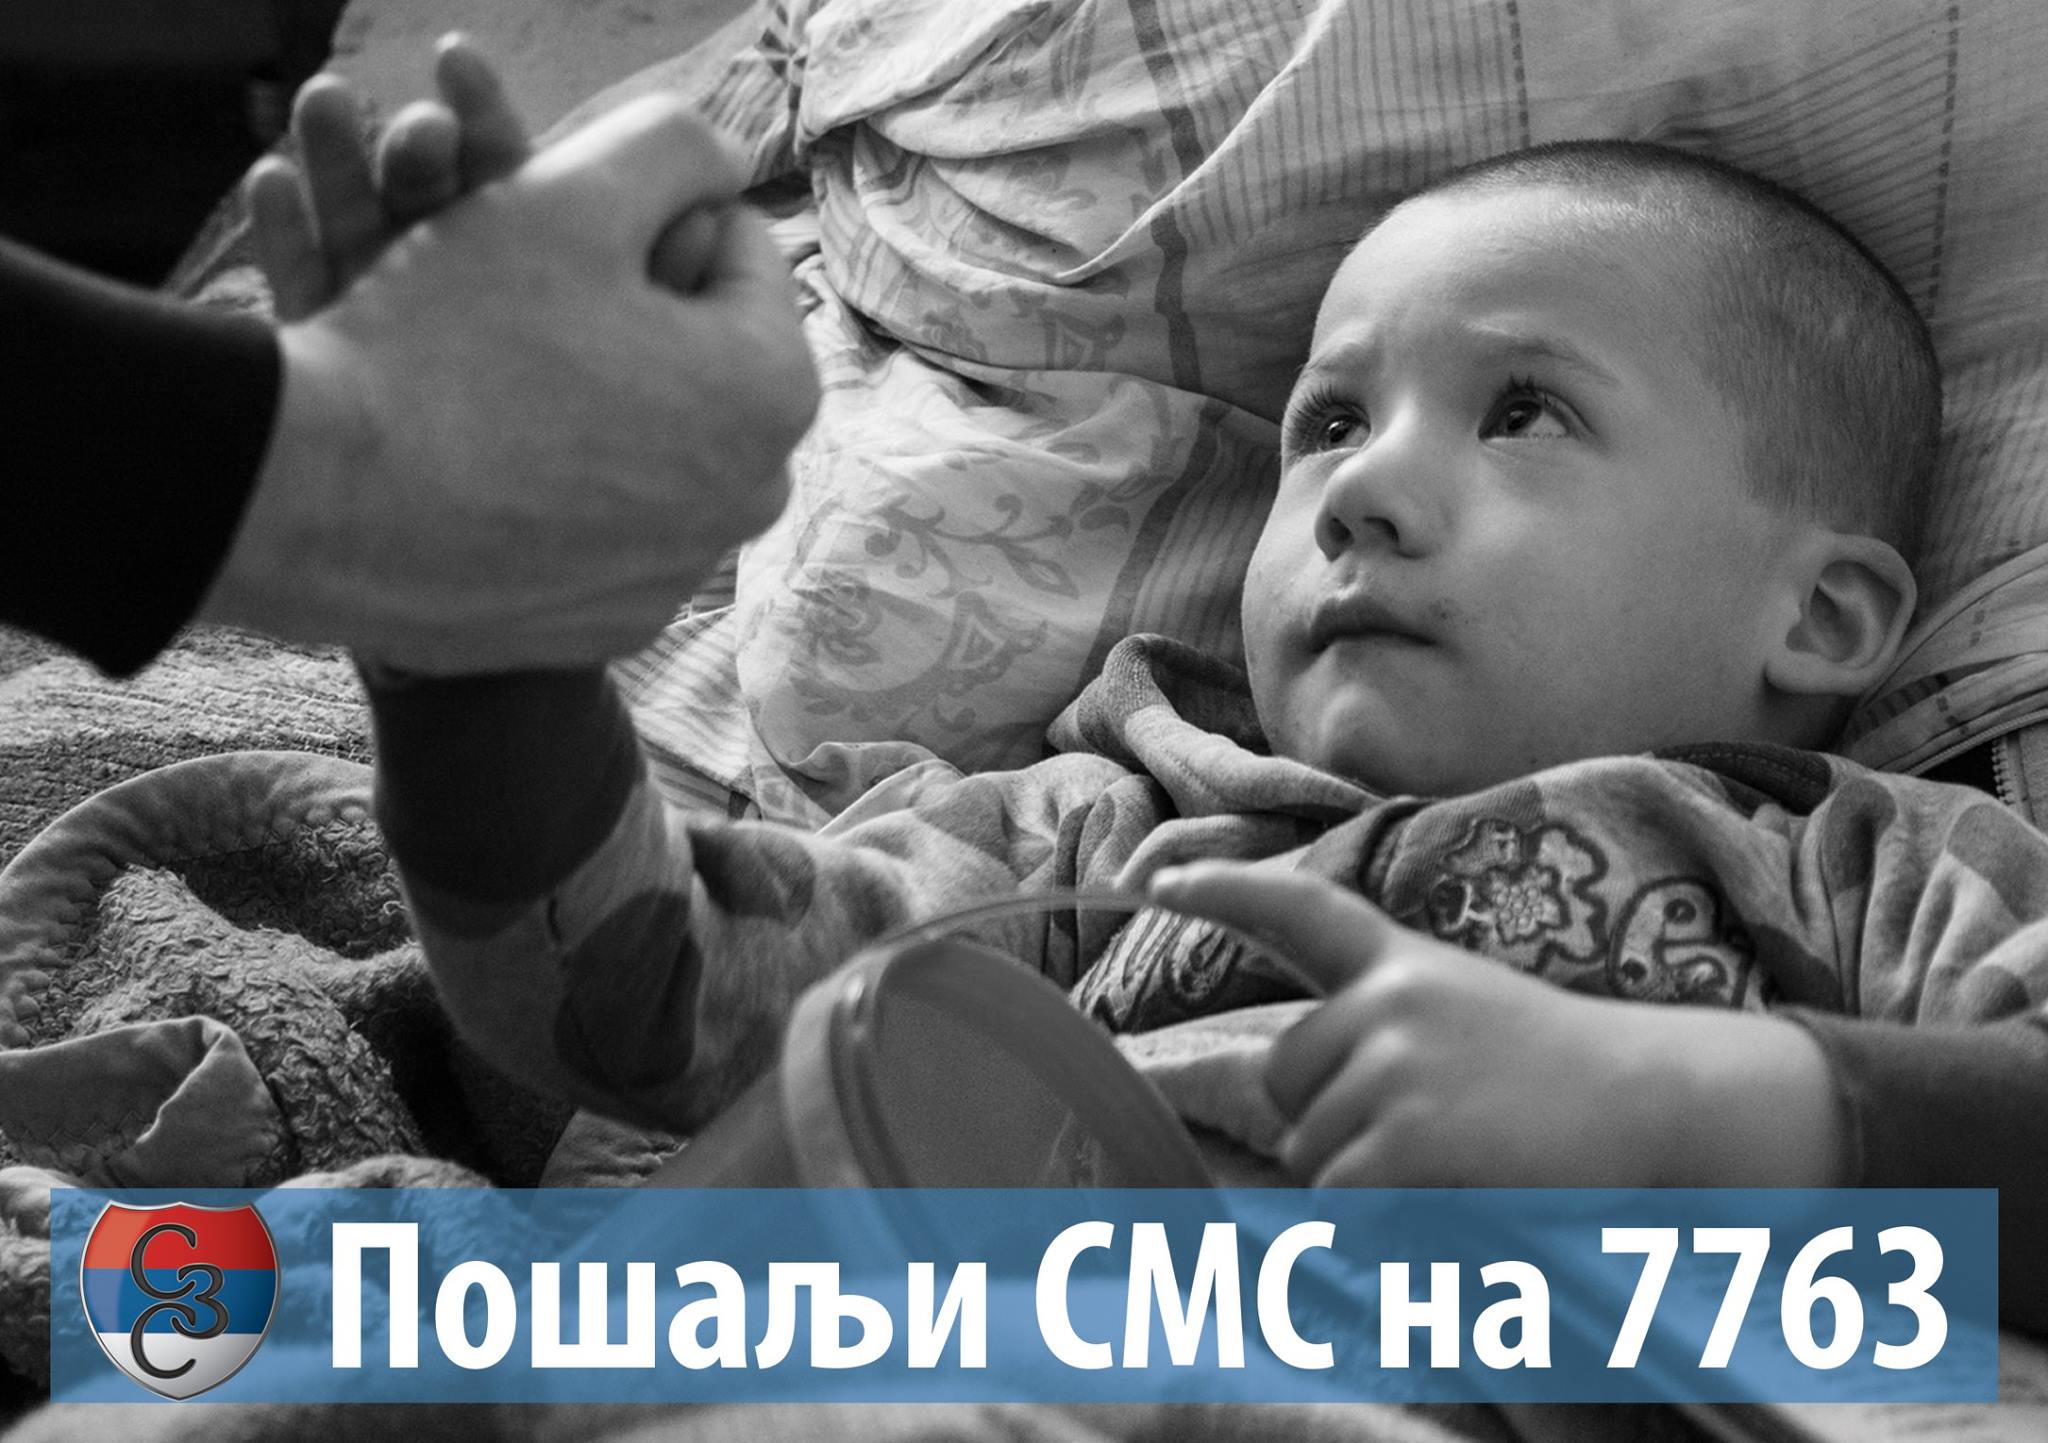 Слањем СМС-а на број 7763 можете помоћи малом Илији са слике и хиљадама угрожених српских породица широм Балкана!